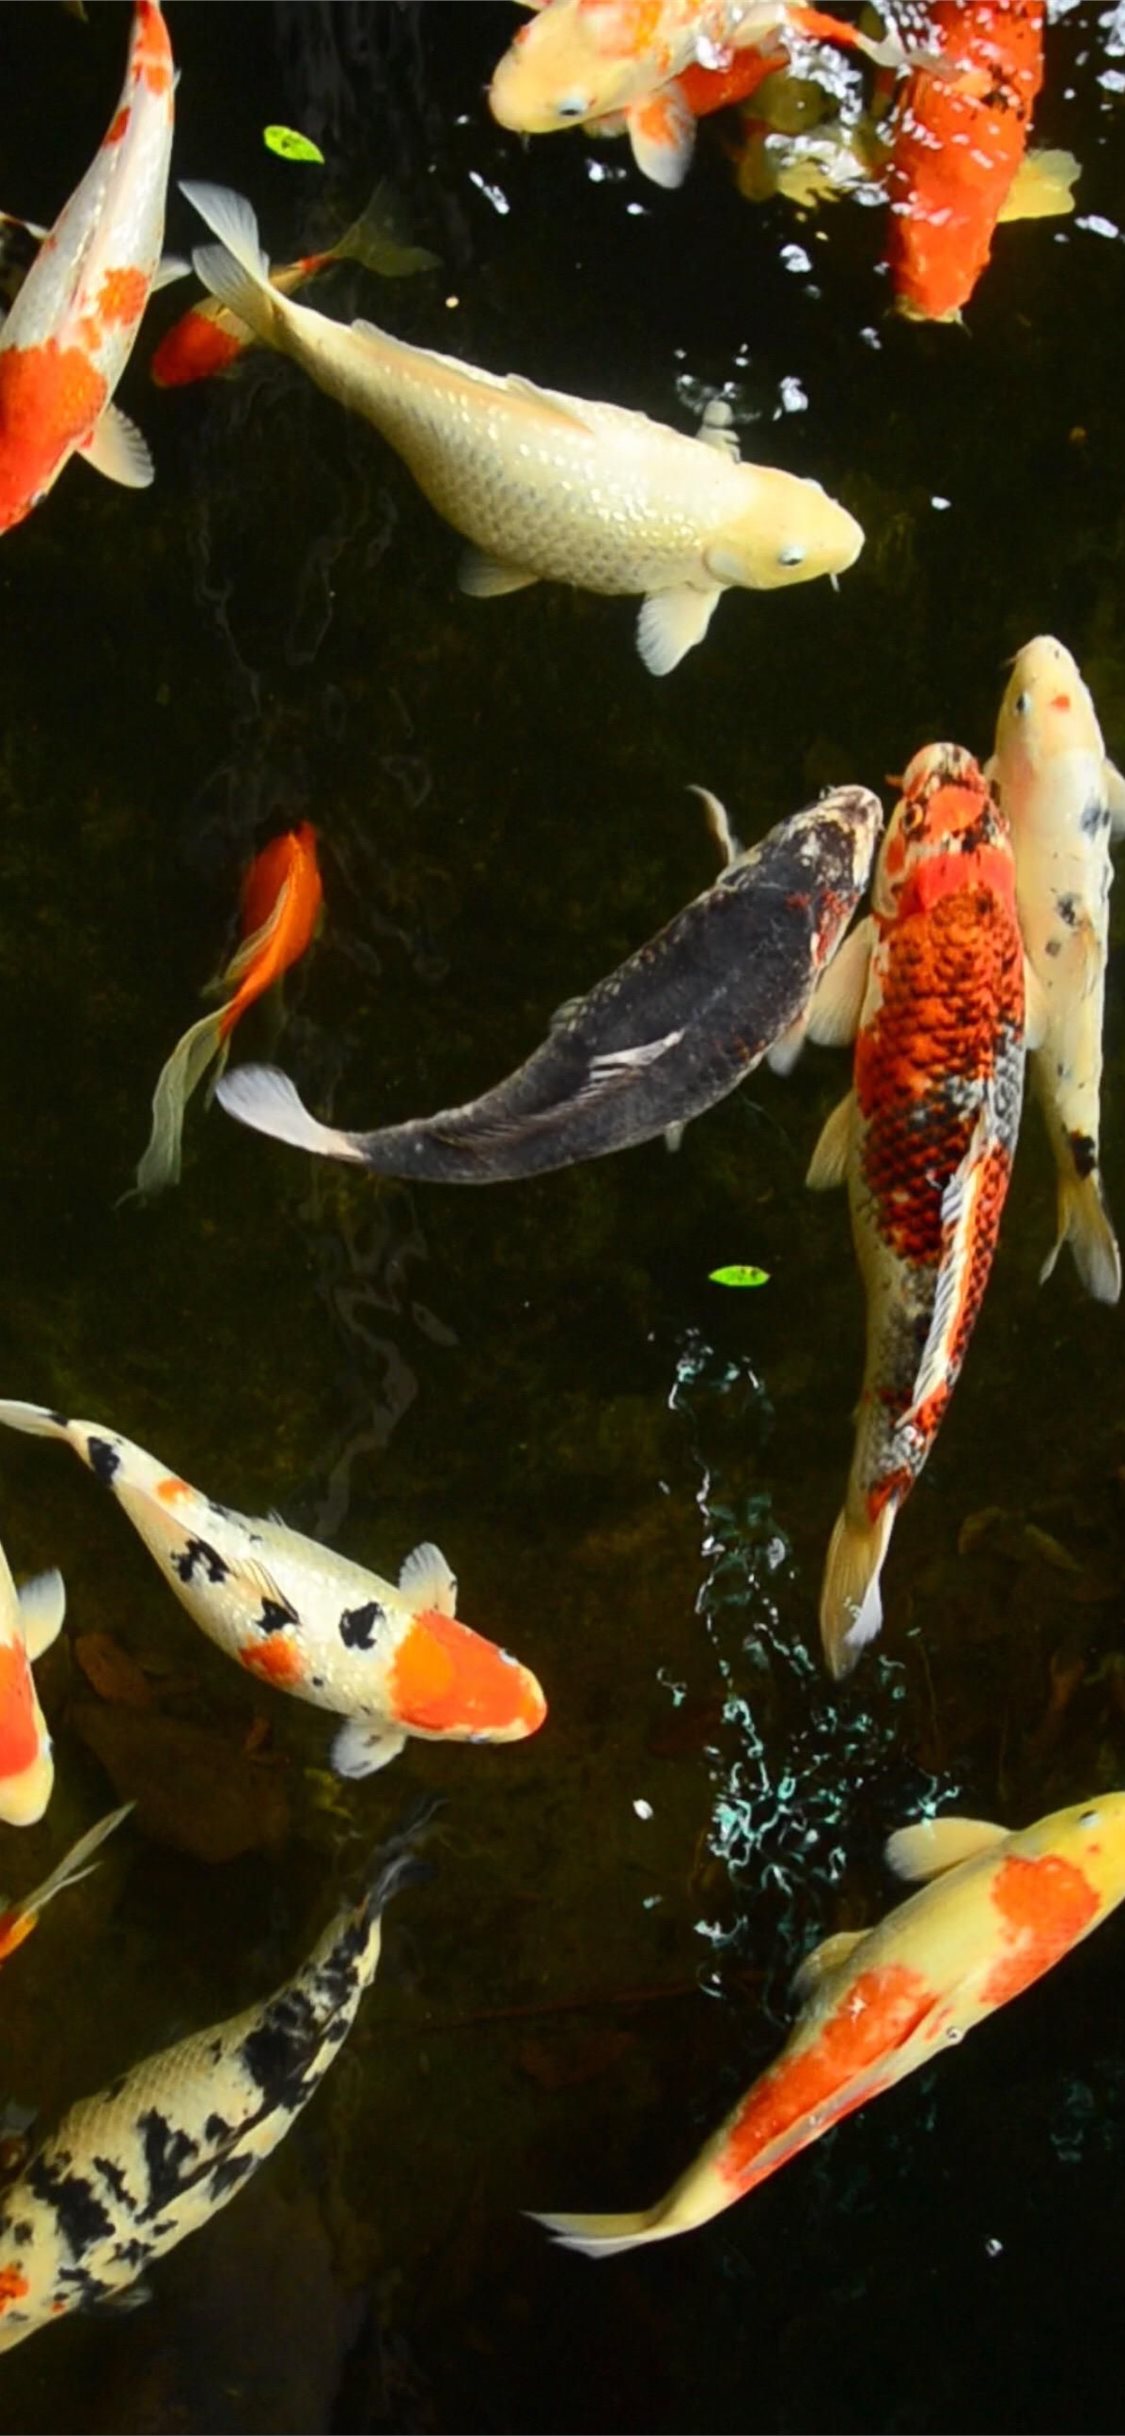 Rượu cá chép là một món ăn ngon và phổ biến ở Việt Nam, và trong ảnh này, bạn sẽ được thấy cảnh một con cá chép to lớn, đẹp với hào quang màu sắc của nó. Hãy tưởng tượng bạn đang ngồi bên hồ và tận hưởng cảm giác yên bình khi ngắm nhìn chú cá trong bức ảnh này.